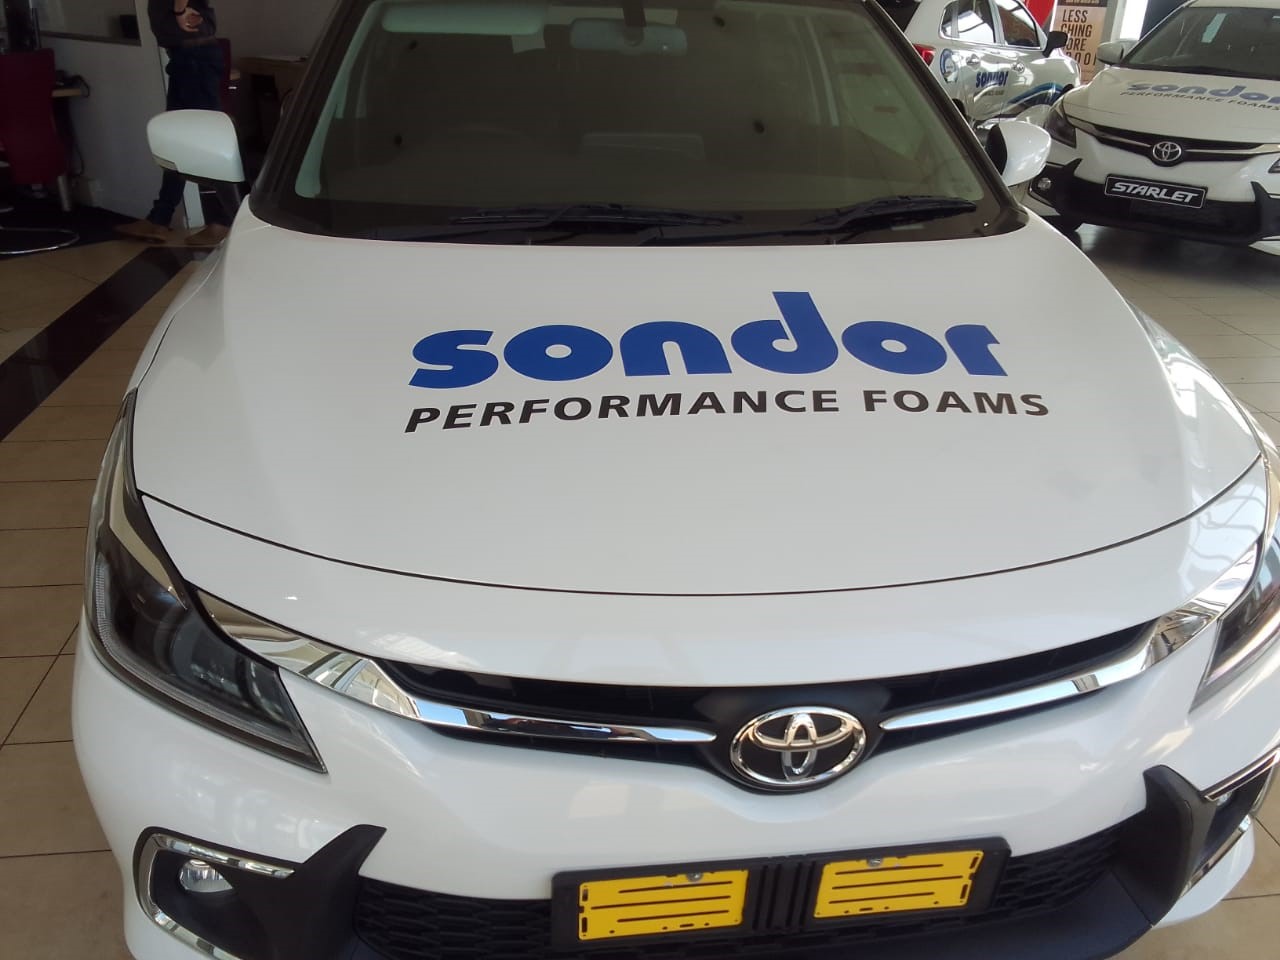 Sondor-Branding